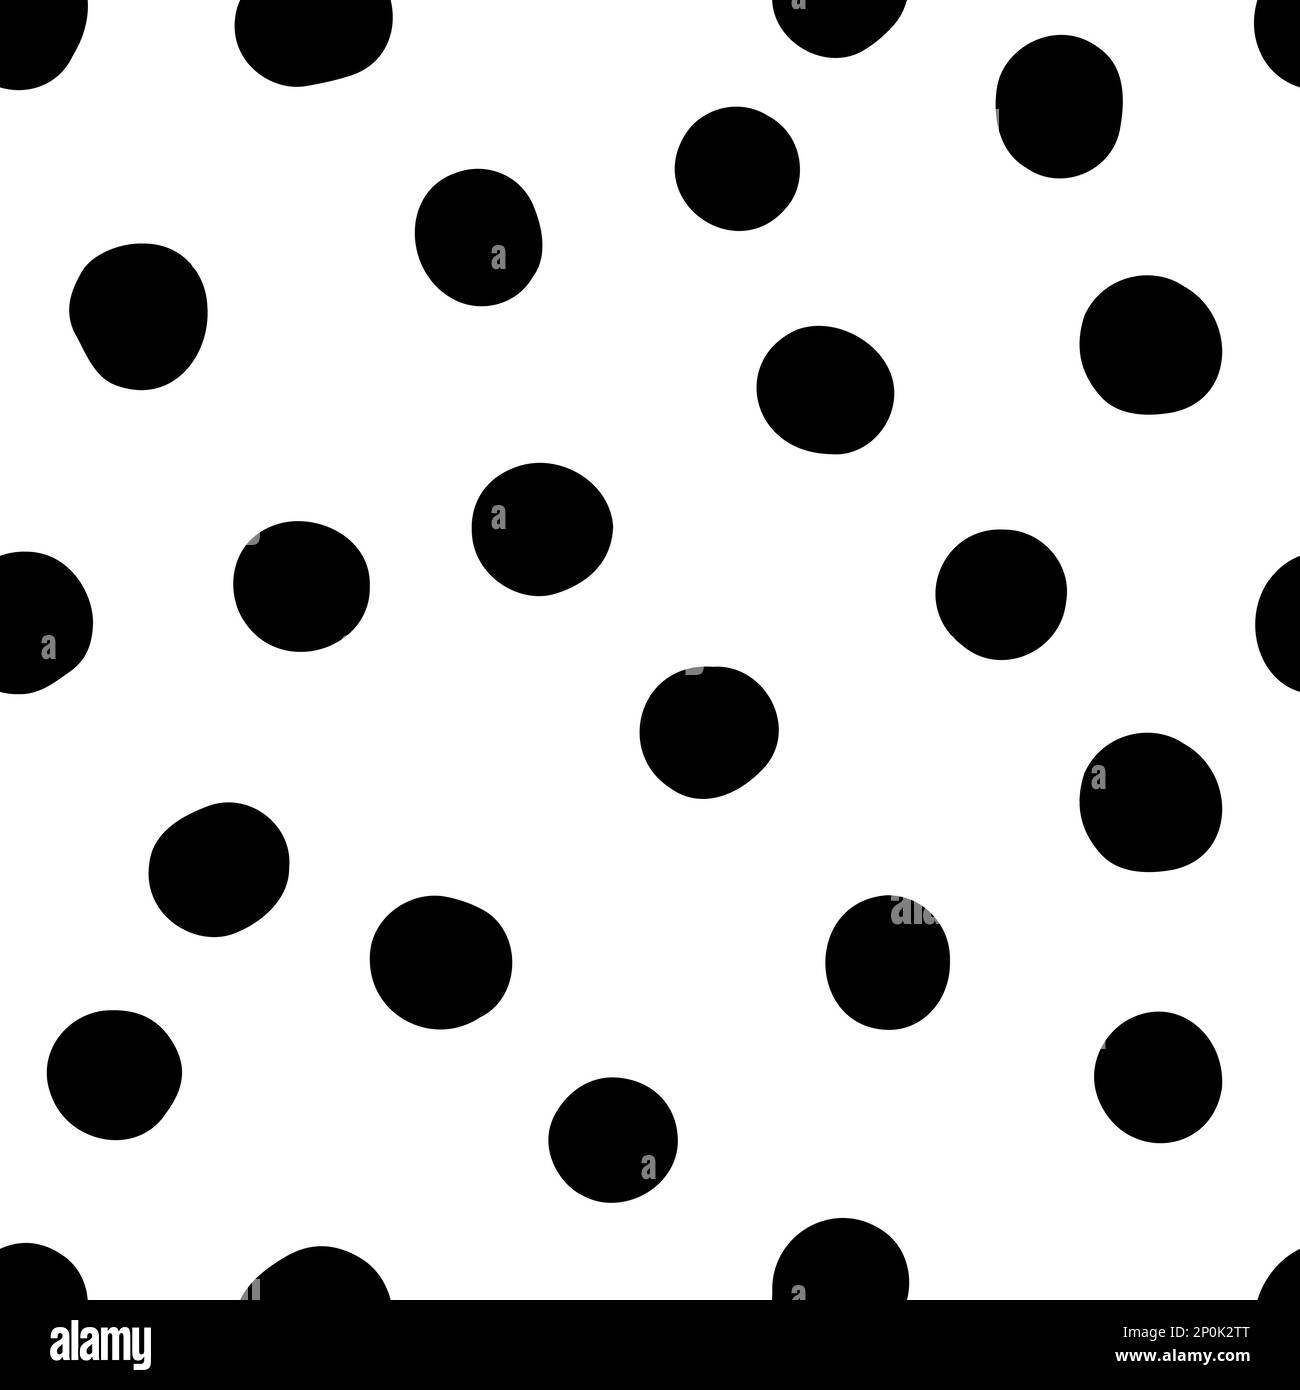 Nahtloses, neutrales Punktmuster. Schwarze handgezeichnete Kreise isoliert auf weißem Hintergrund. Abstraktes Random Points Ornament. Vektorgrafik für w Stock Vektor